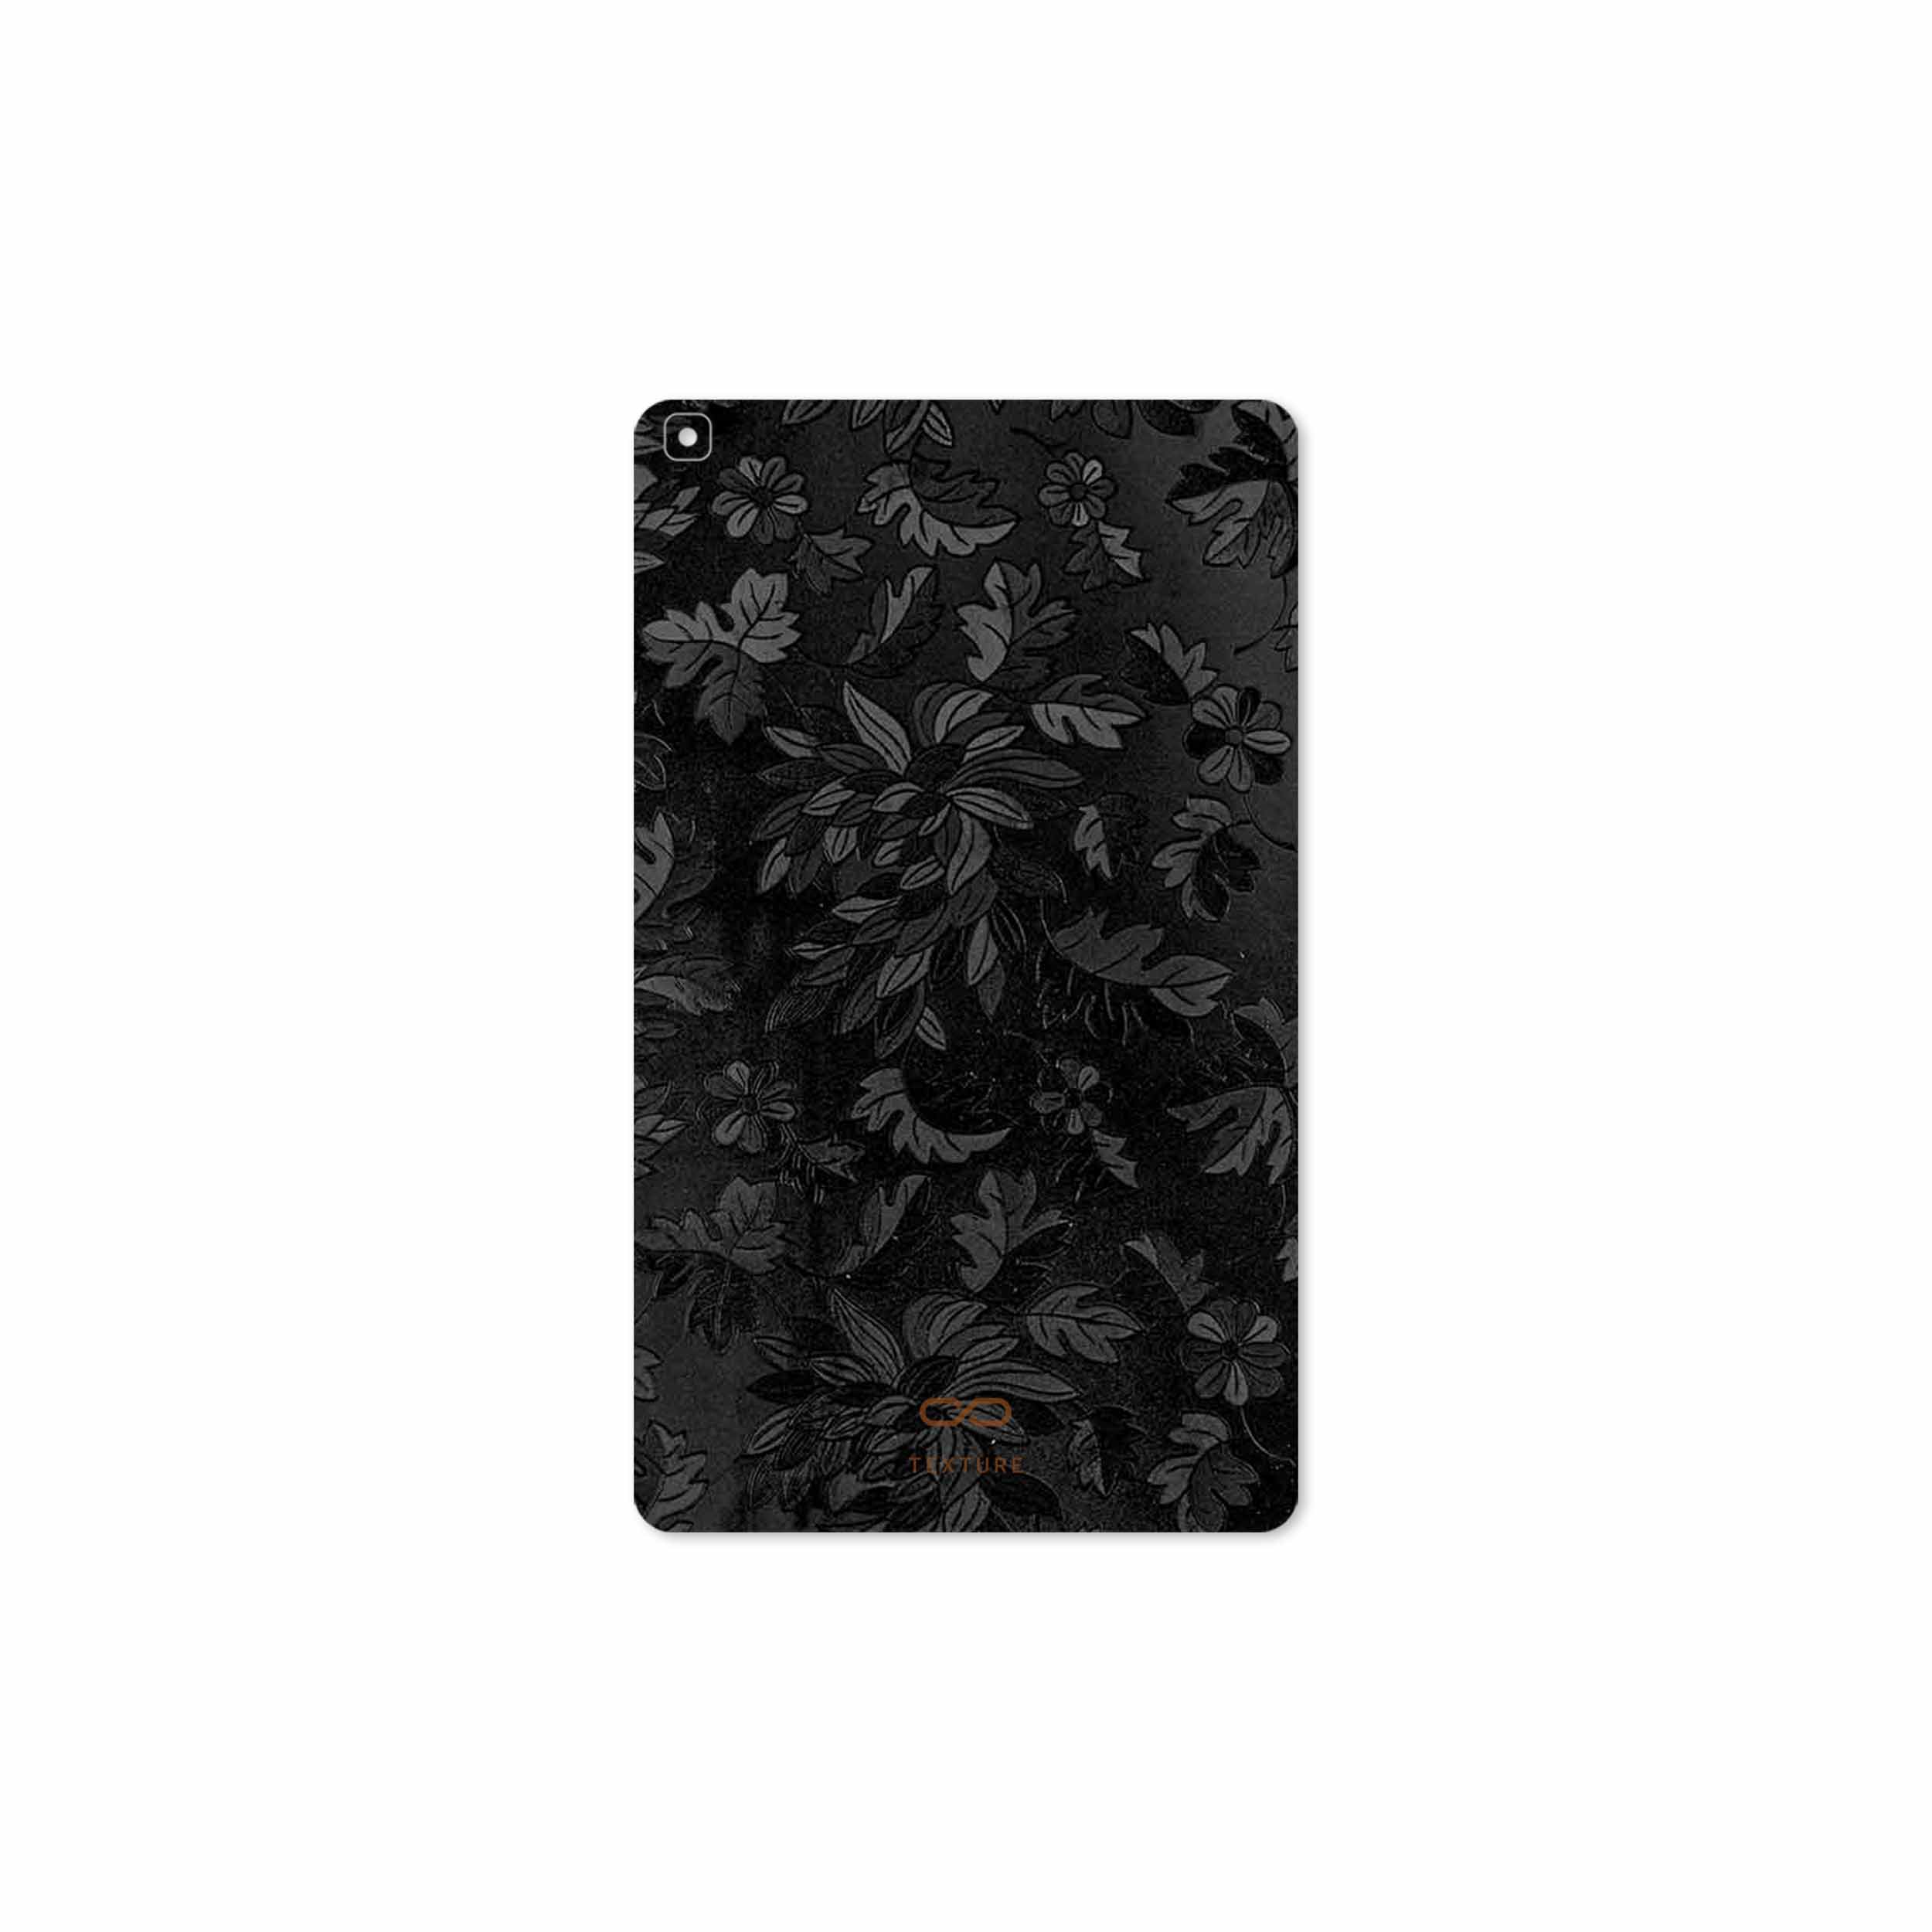 تصویر برچسب پوششی ماهوت مدل Black-Wildflower مناسب برای تبلت سامسونگ Galaxy Tab A 8.0 2019 T295